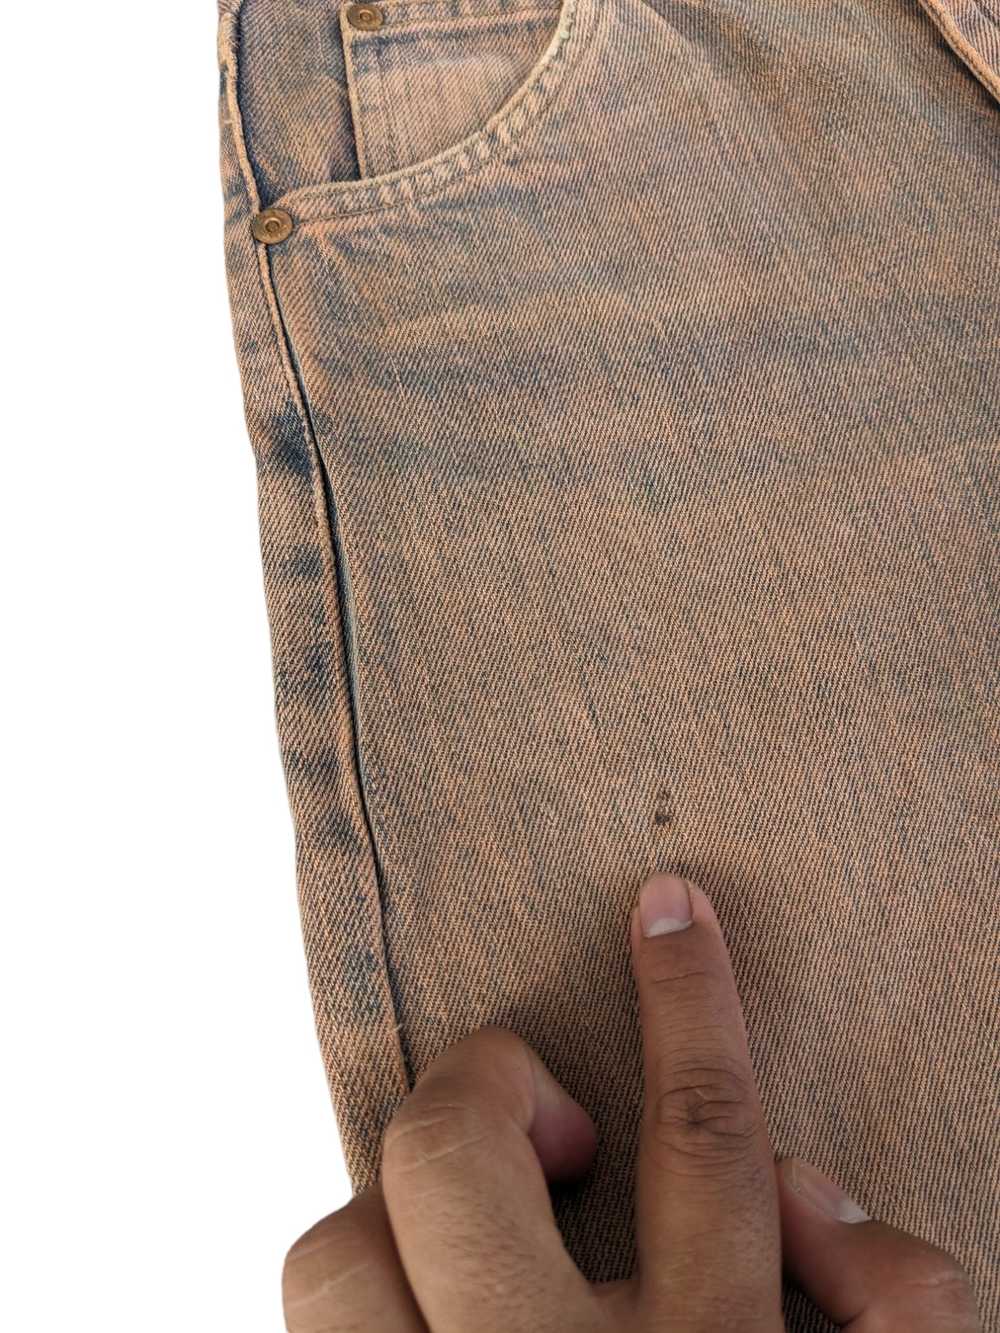 Lee × Vintage Rare Vintage Mr. Lee 80s Jeans Made… - image 10